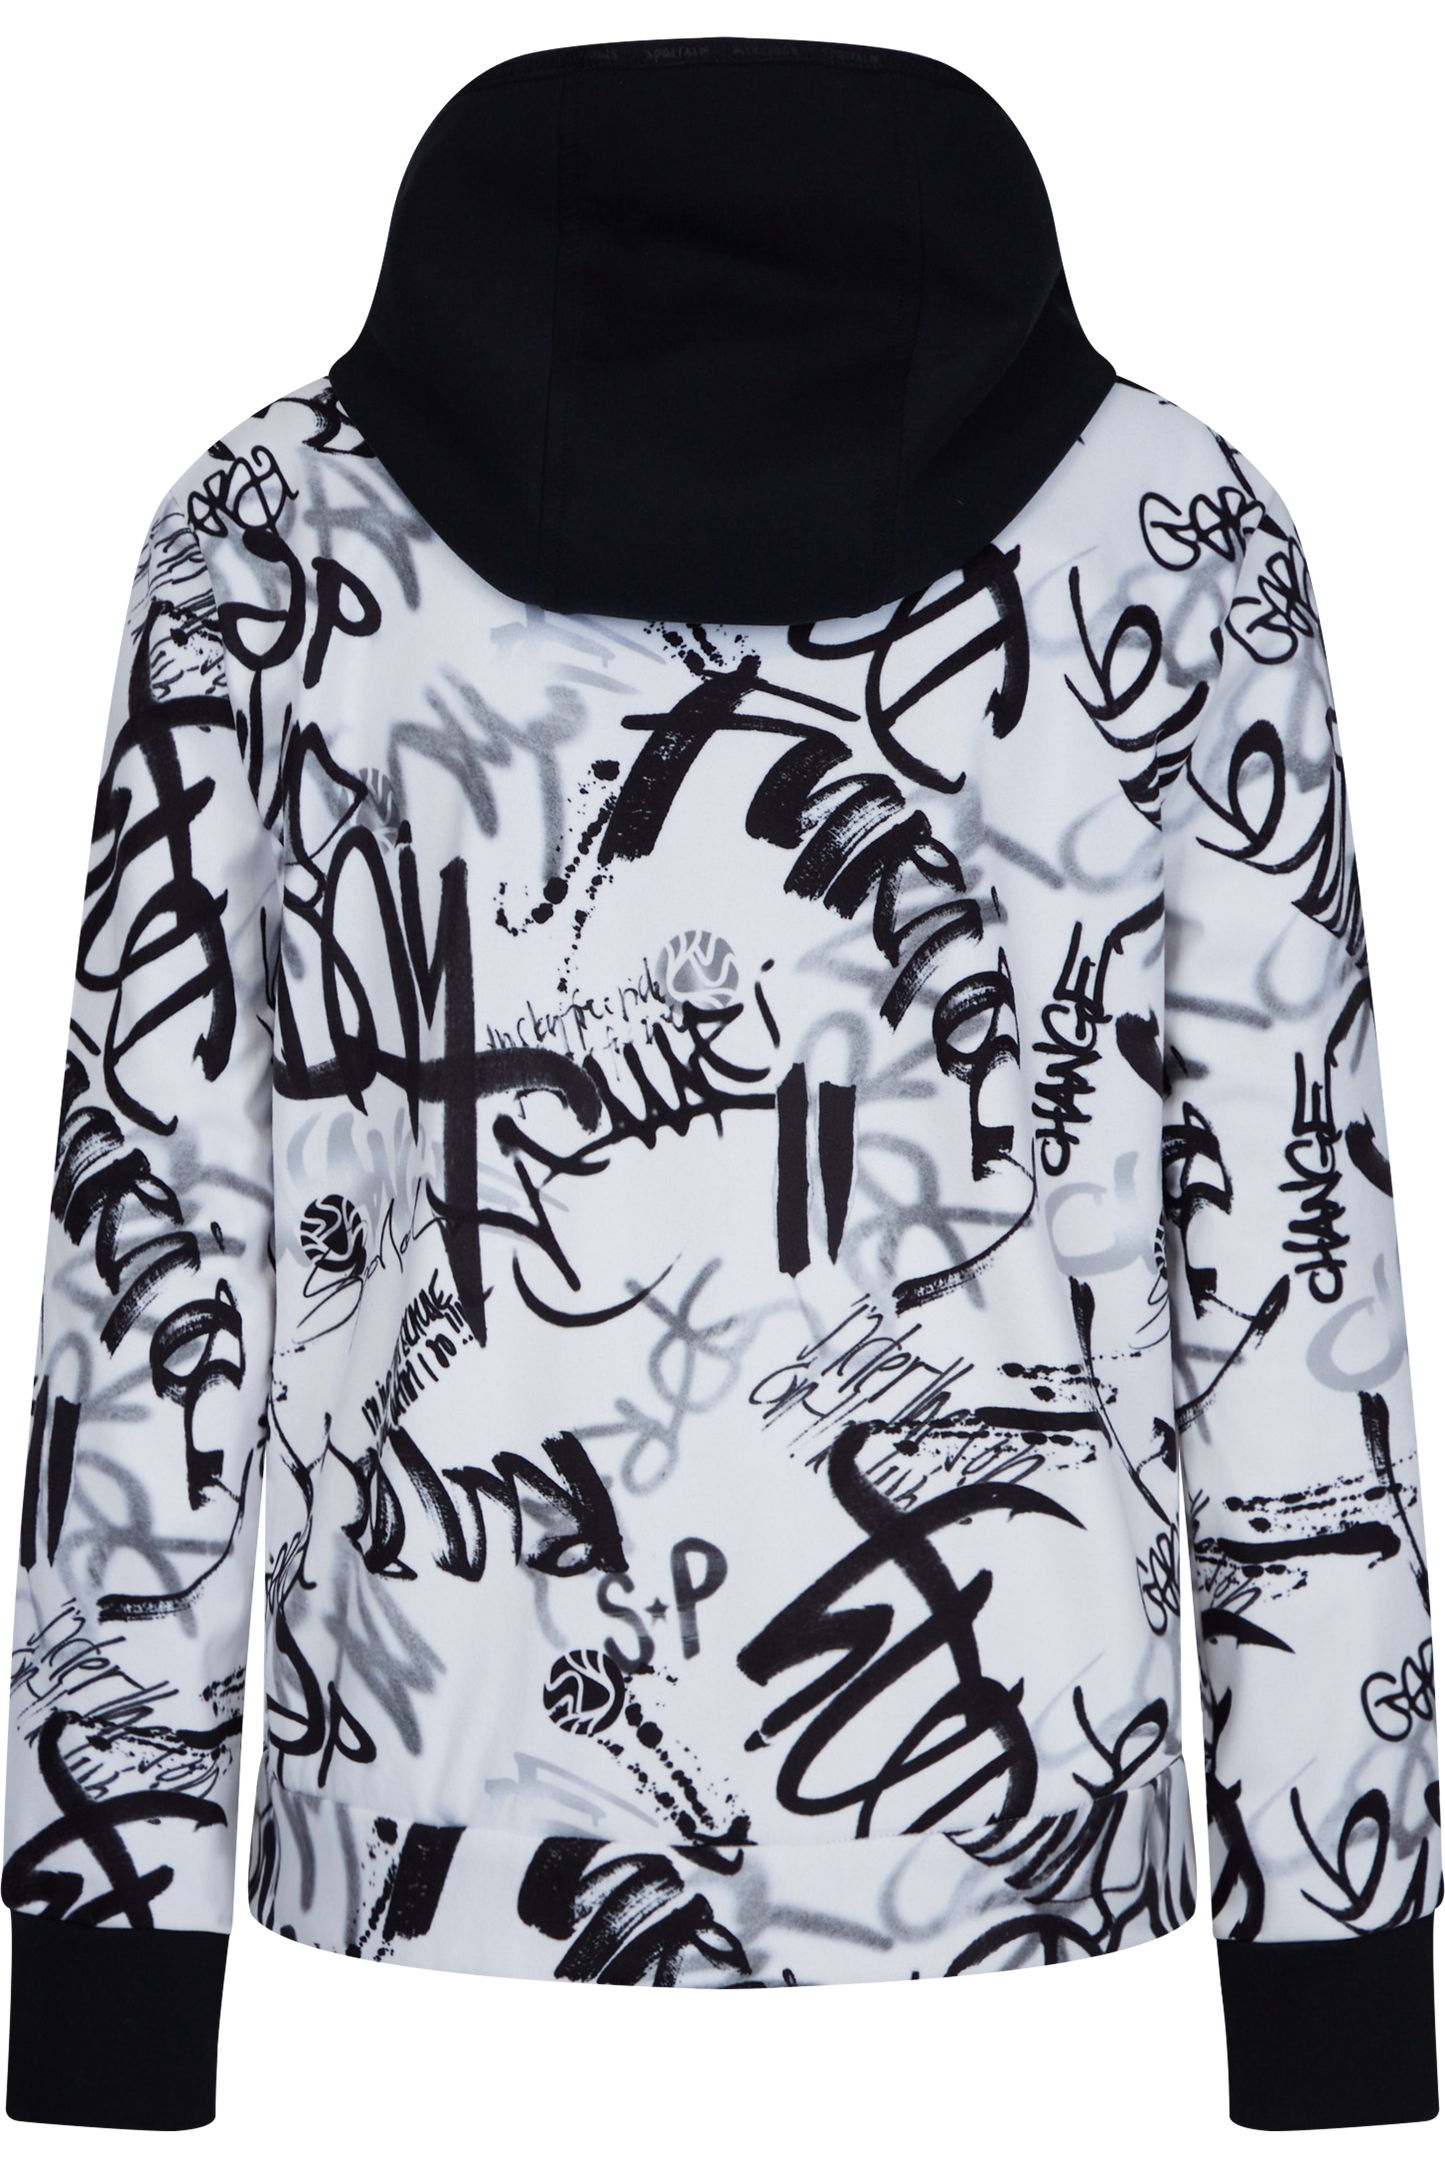 Jacket with Graffiti Print